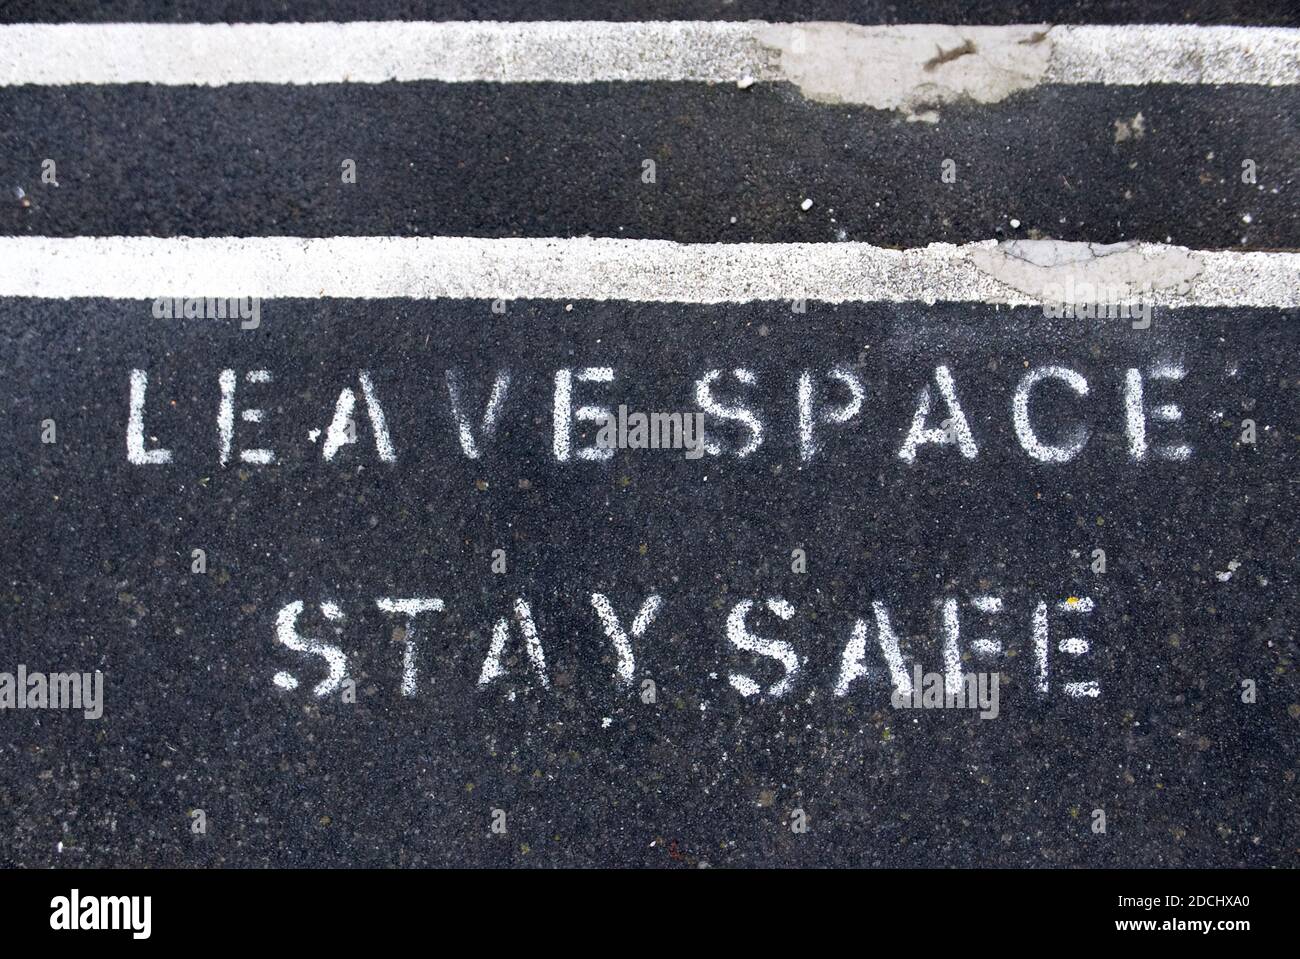 Deje espacio manténgase seguro pintado en el pavimento para promover el distanciamiento social debido a covid19. Foto de stock